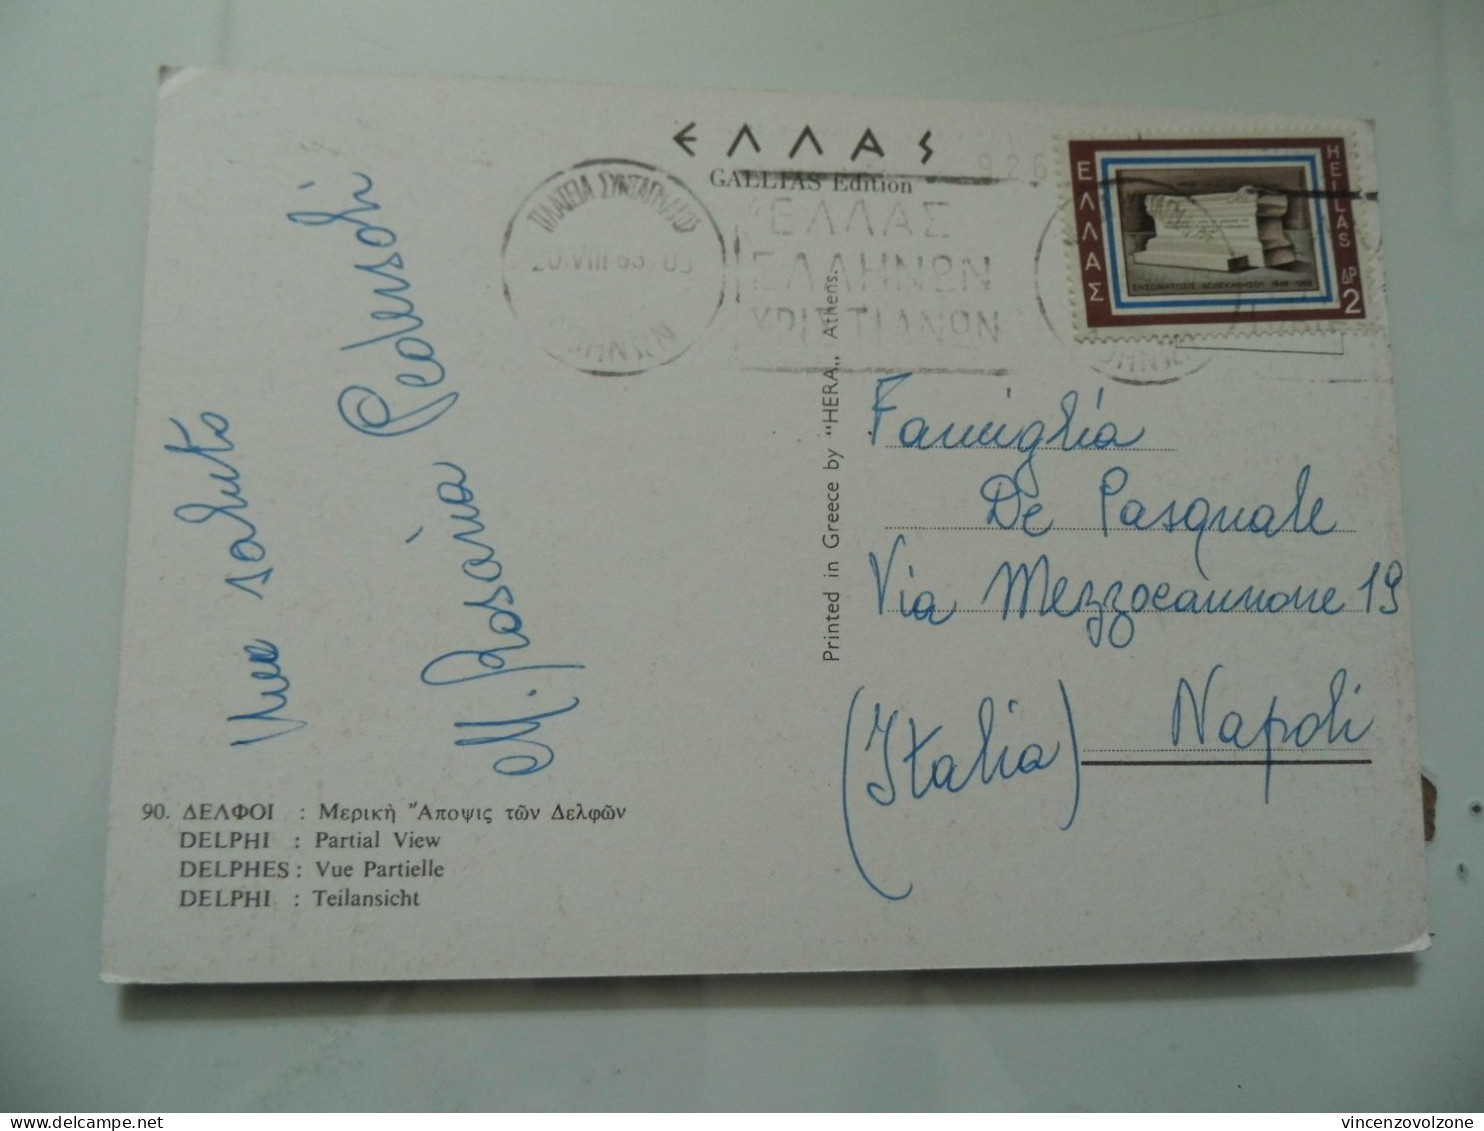 Cartolina Viaggiata "DELPHI Partial View" 1965ù - Greece